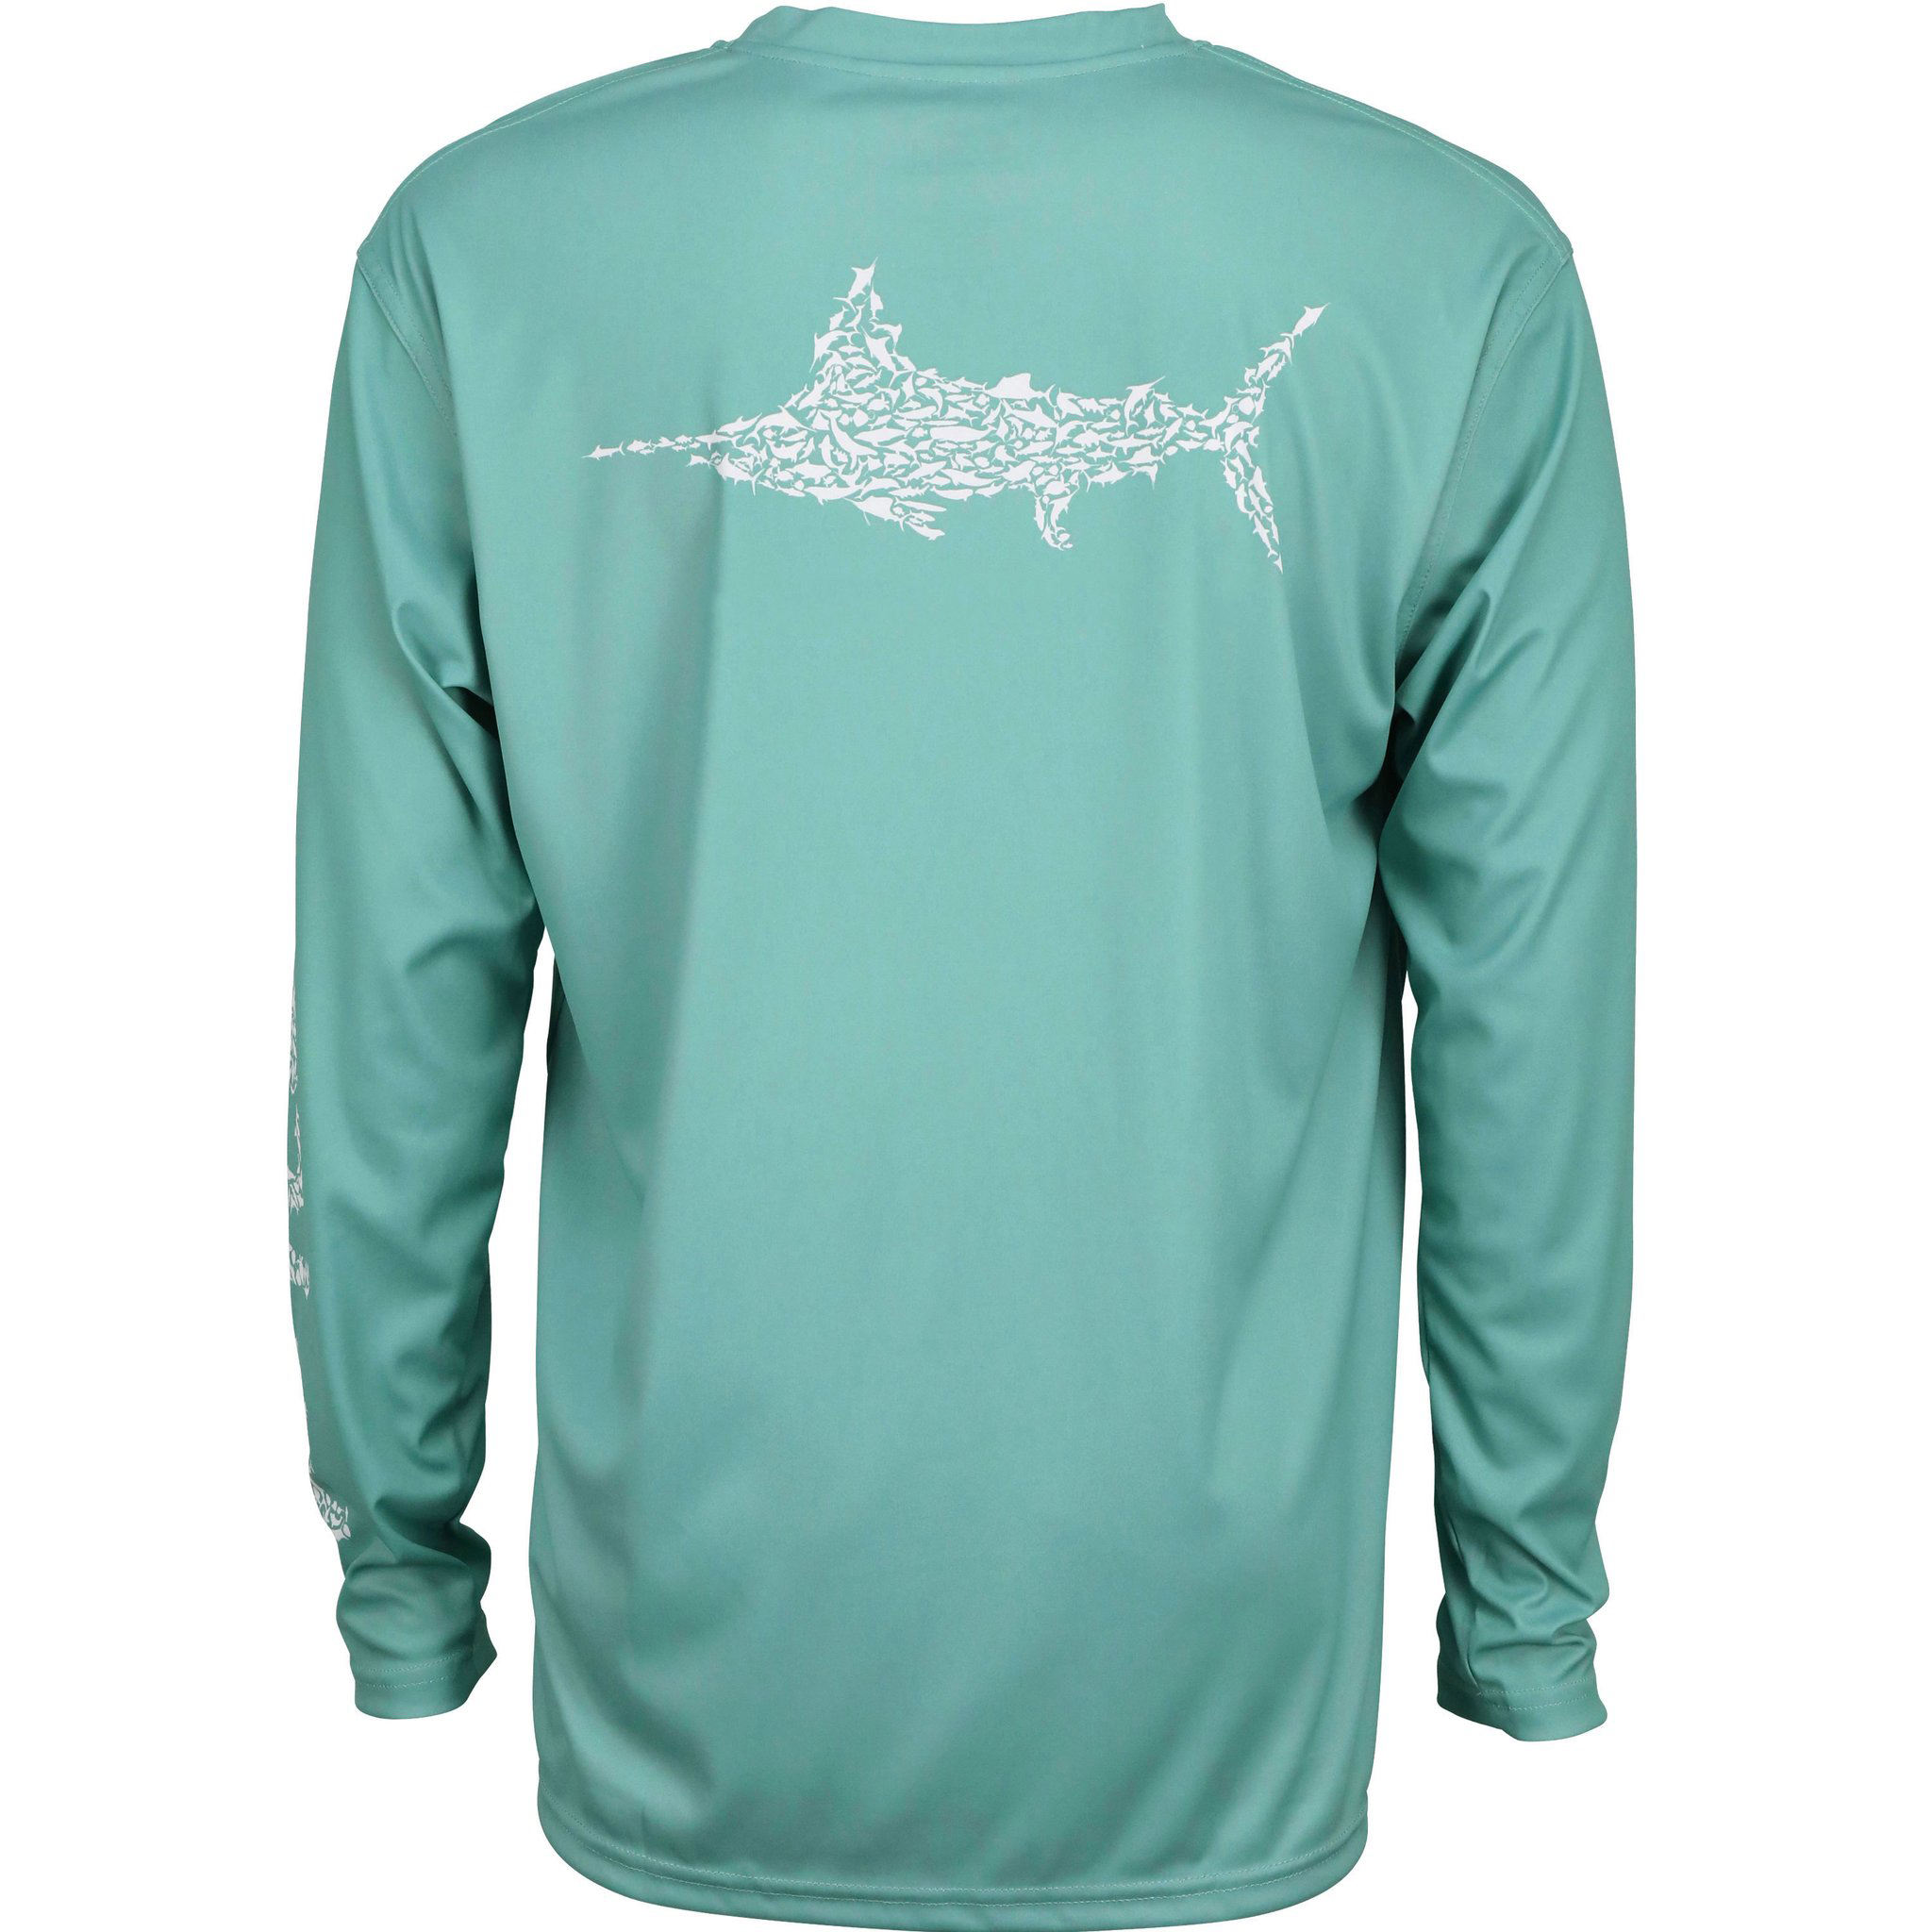 OEM proizvođač prilagođenog logotipa 100% poliester brzosušeće UPF 50 muške ribolovačke majice za zaštitu od sunca